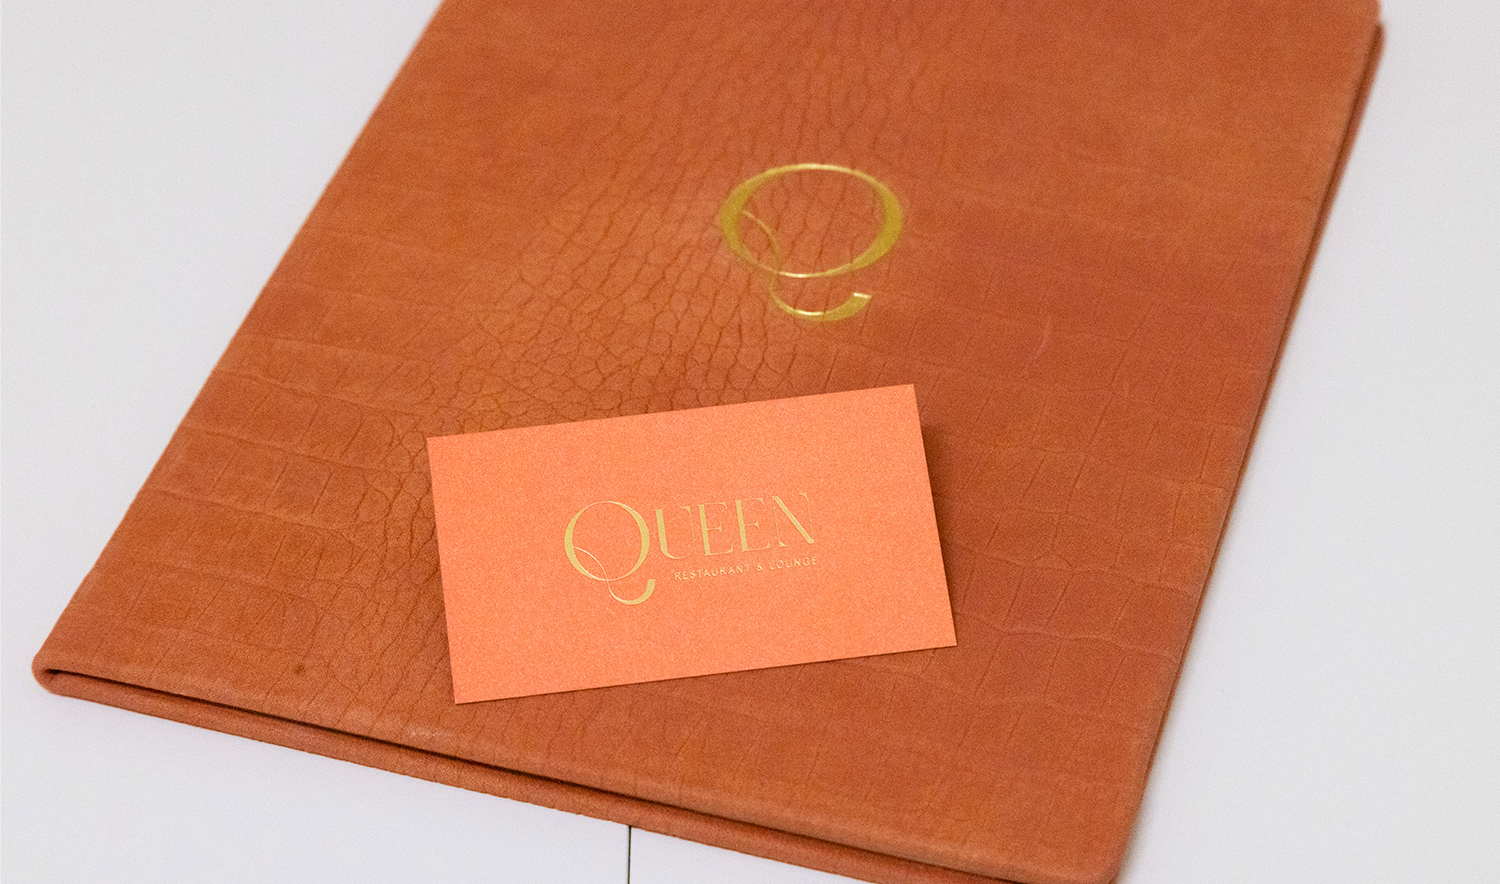 Queen Miami - brand identity